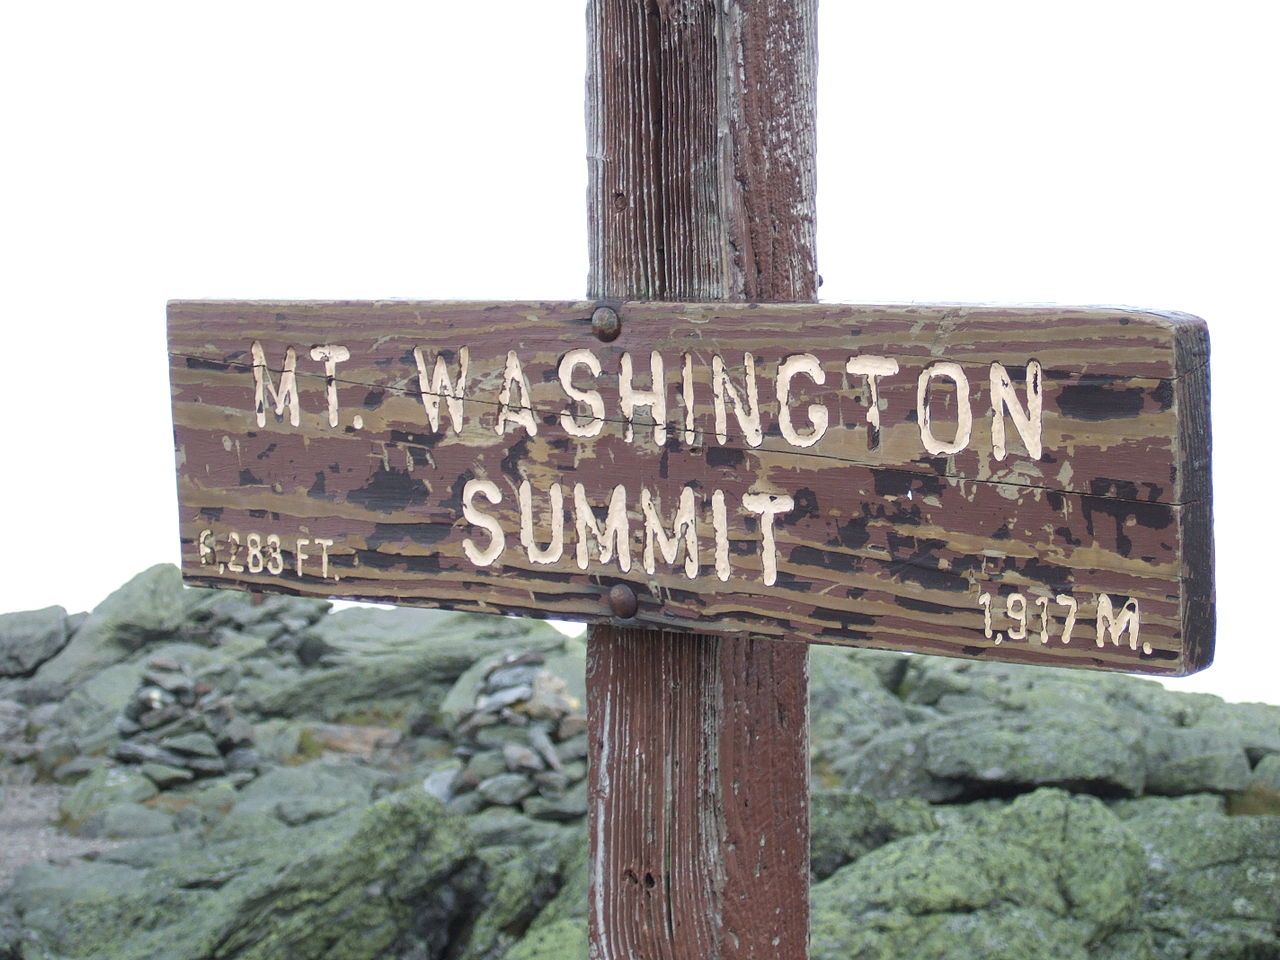 Sign at the summit of Mount Washington, New Hampshire, United States